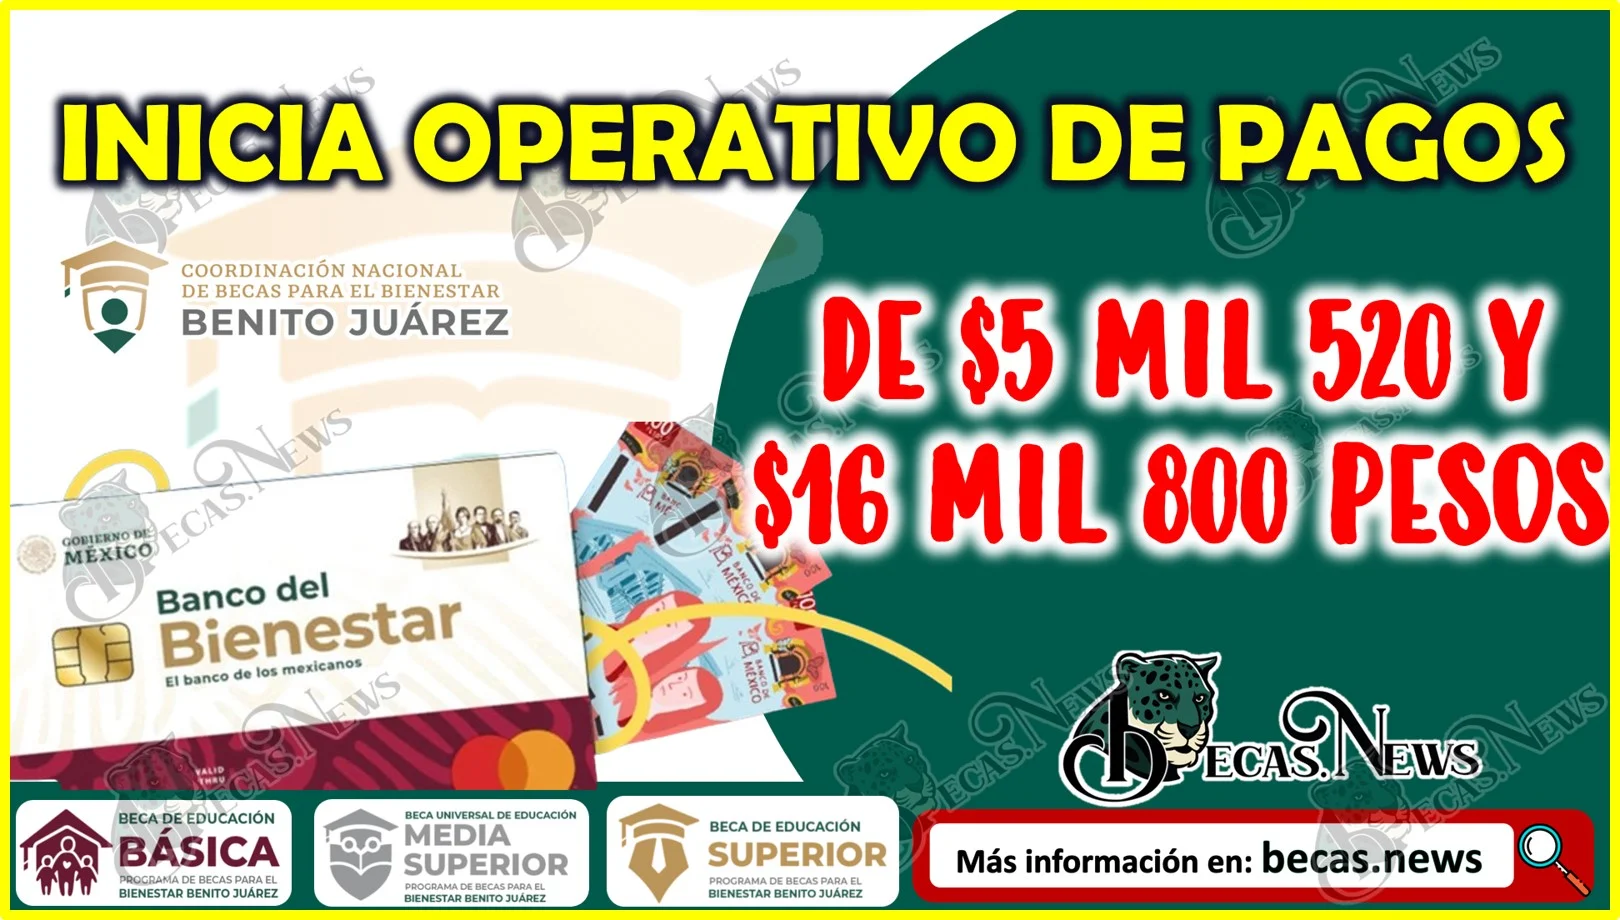 Operativo de pagos de las Becas Benito Juárez ¡Depósitos de $5 mil 520 y $16 mil 800 pesos!